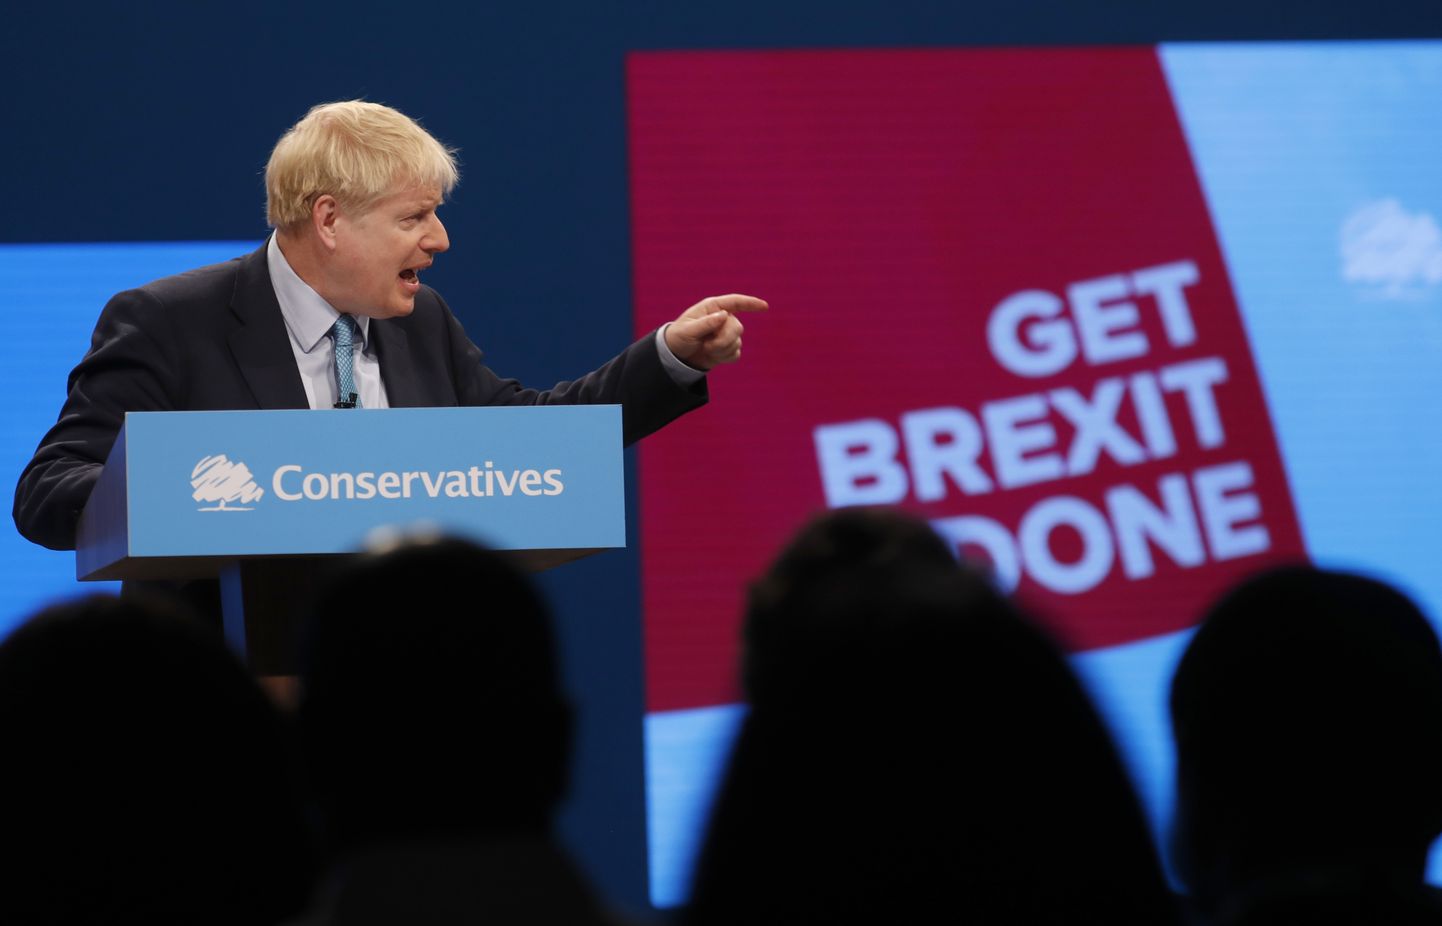 Suurbritannia peaminister Boris Johnson pidamas kõnet konservatiivse partei iga-aastasel konverentsil.